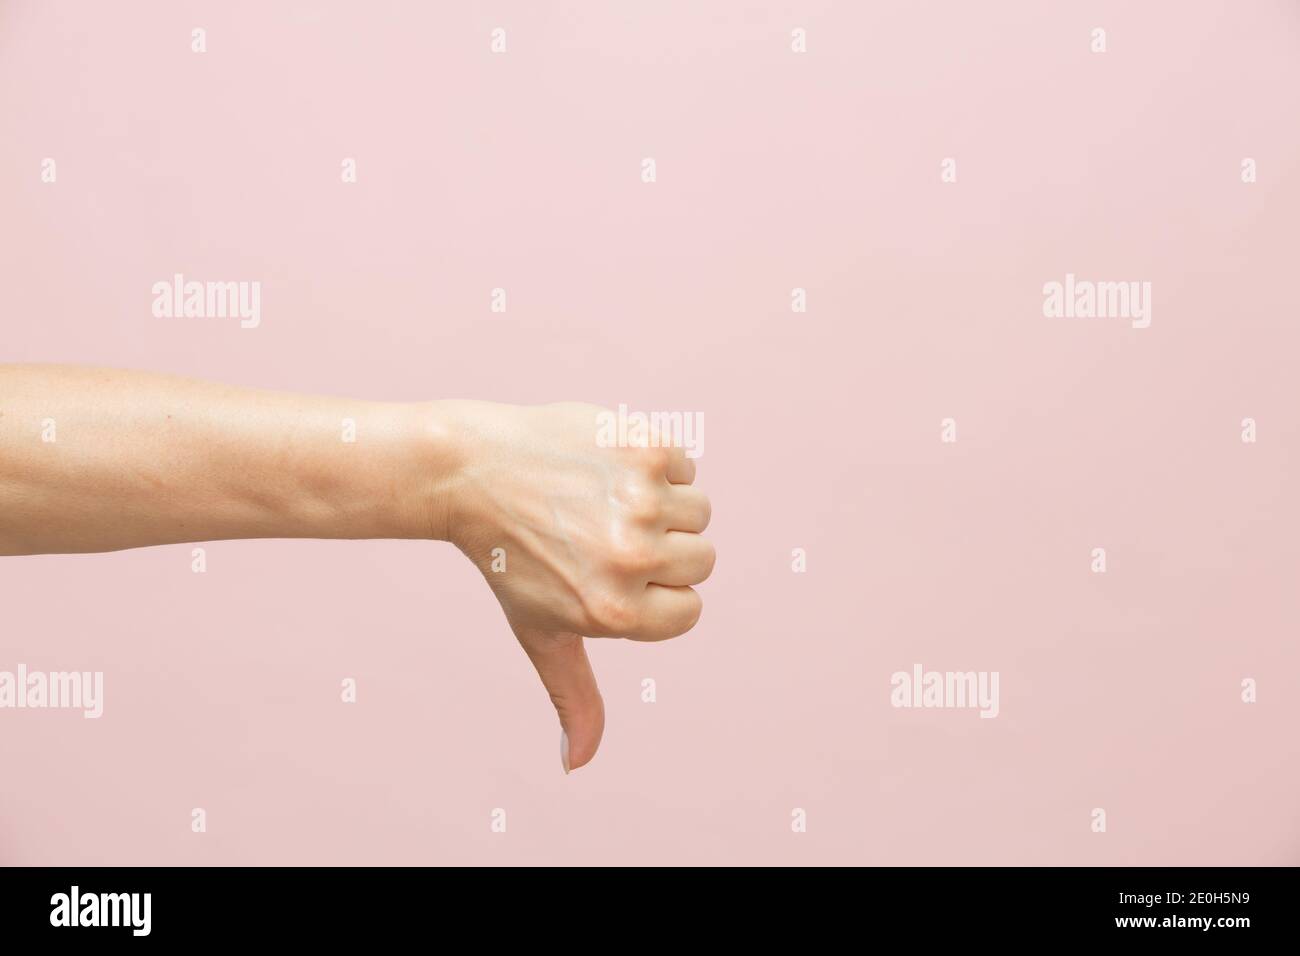 La main caucasienne femelle montre un geste du pouce vers le bas, sur fond rose. Concept minimal. Copier l'espace Banque D'Images